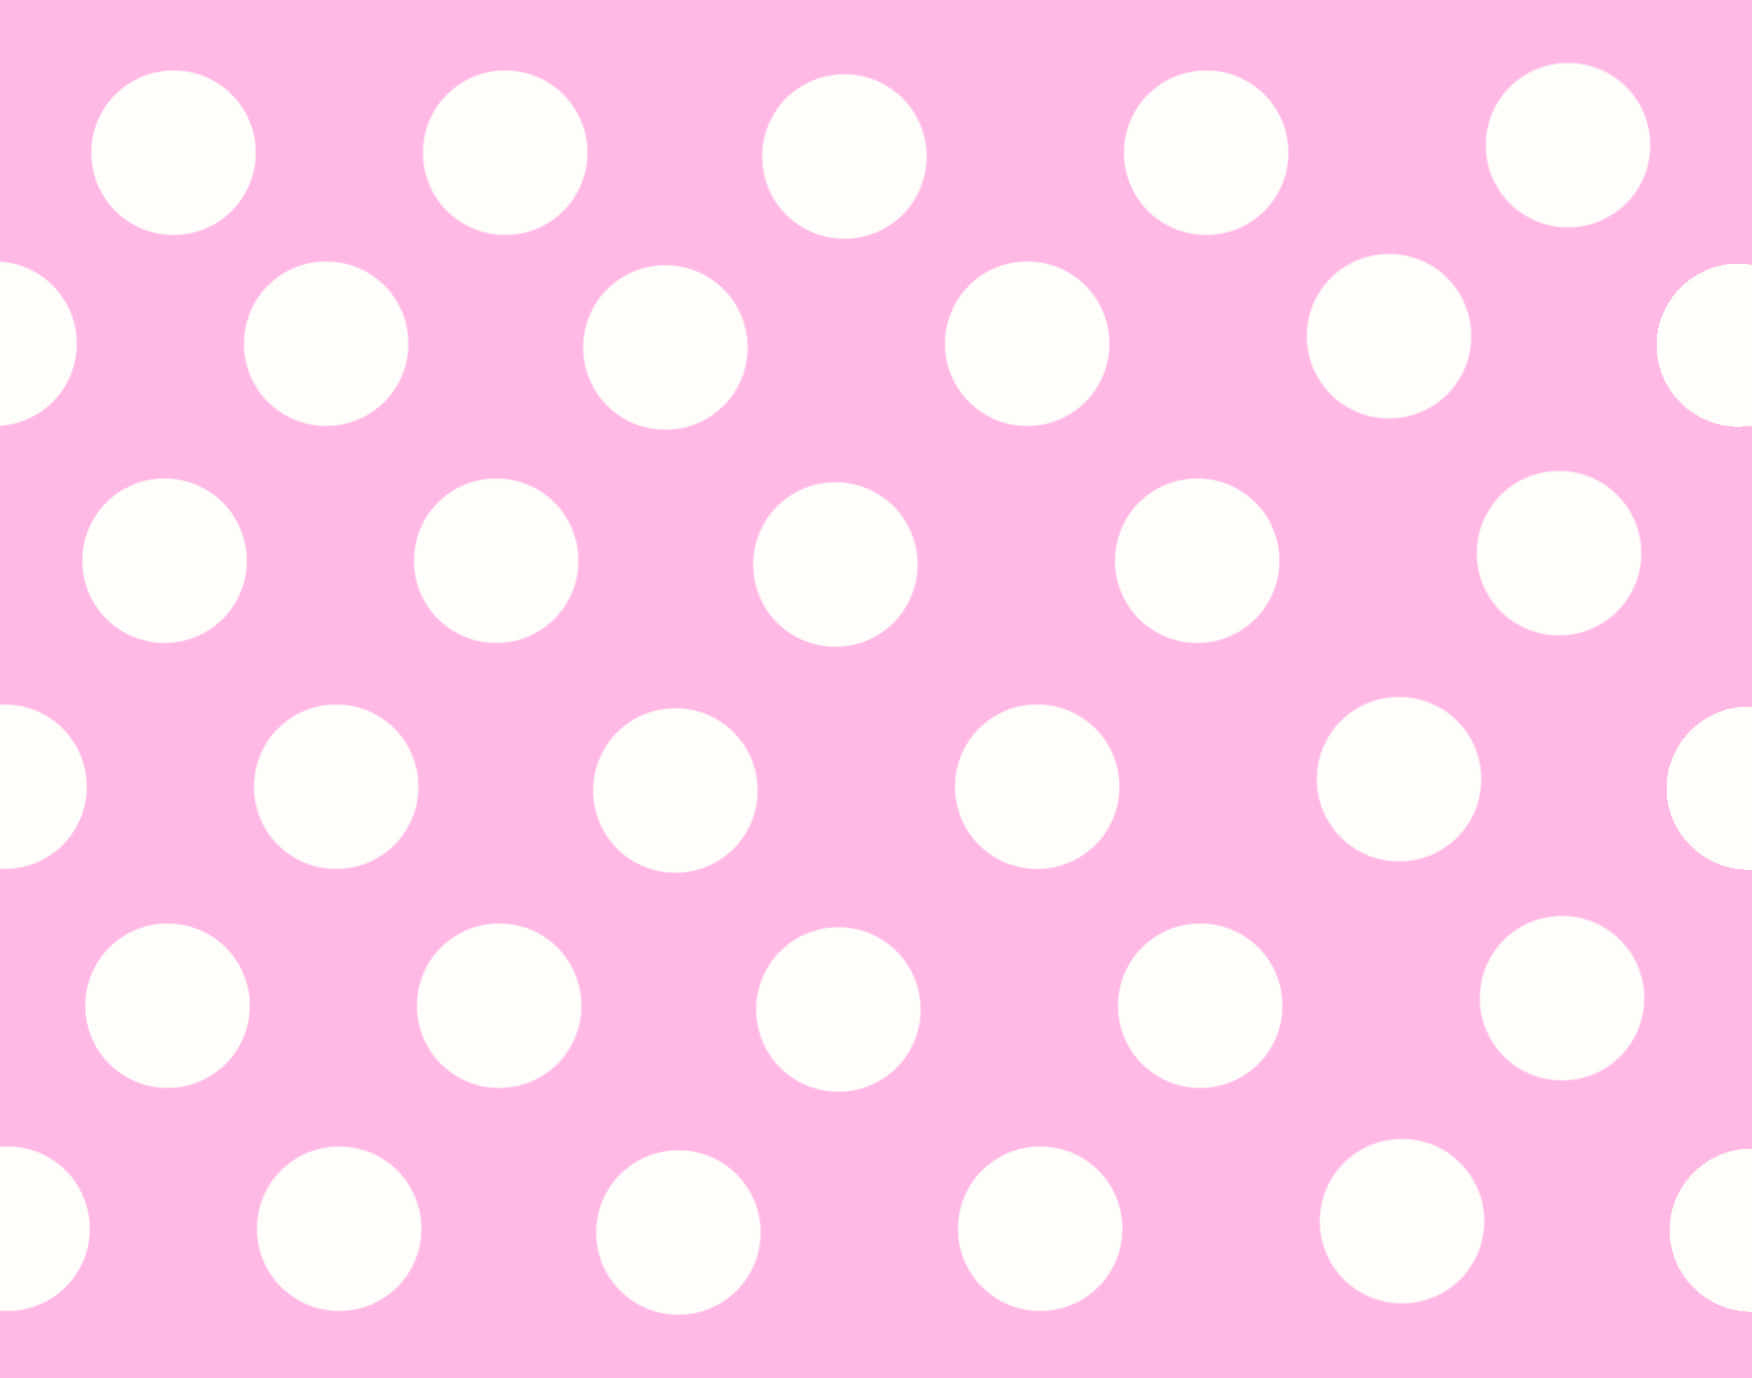 Einfröhlicher Und Humorvoller Hintergrund Mit Pinkfarbenen Polka Dots.